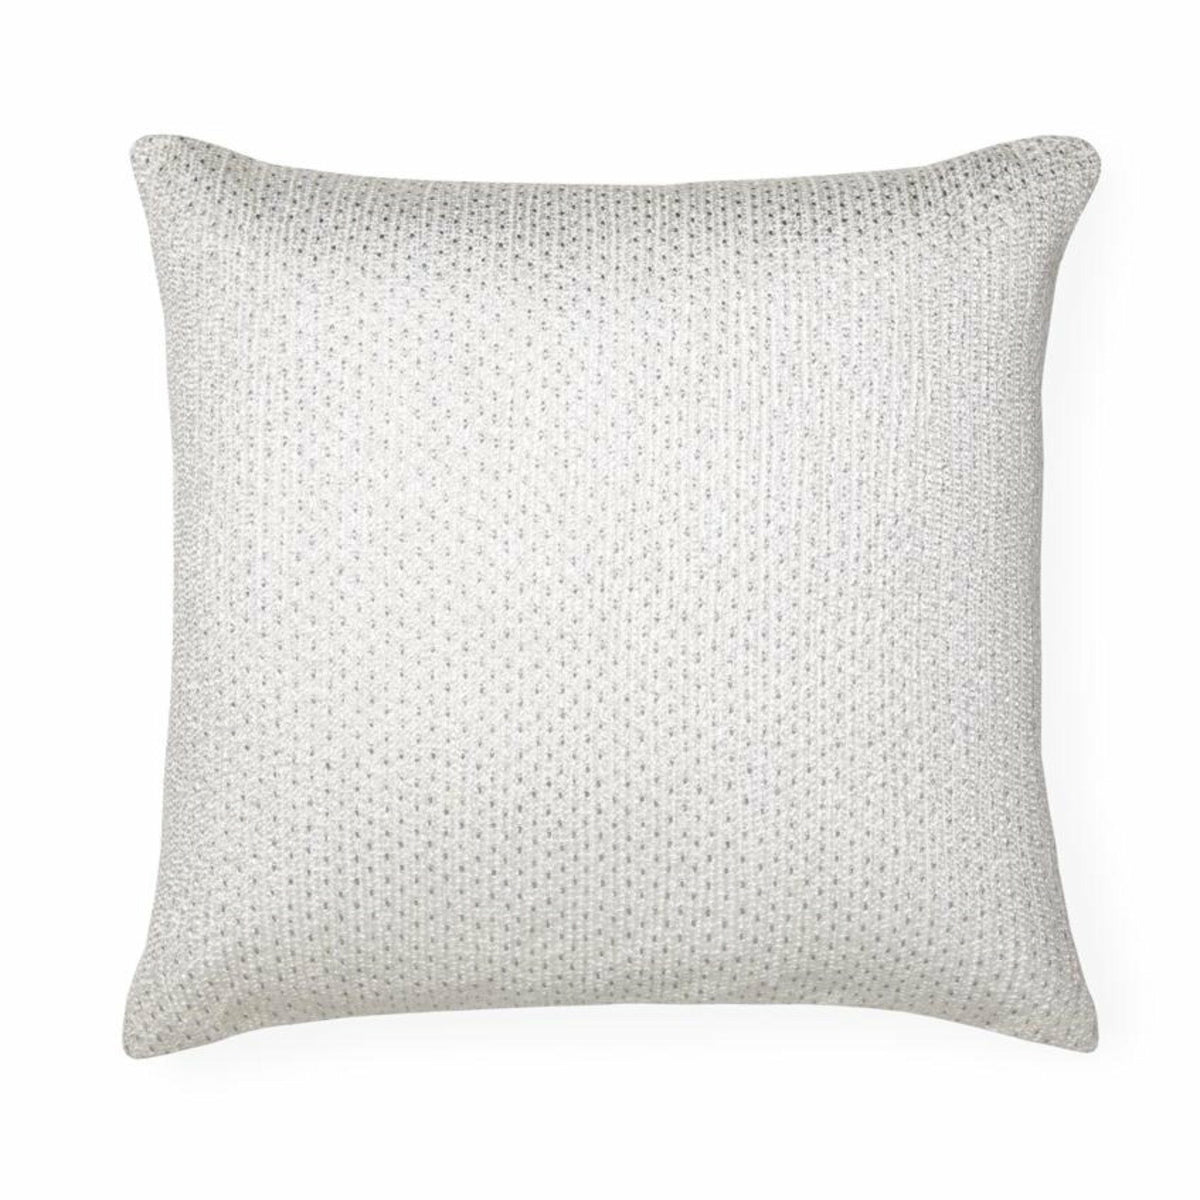 Sferra Nemi Decorative Pillow Ivory/Silver Fine Linens